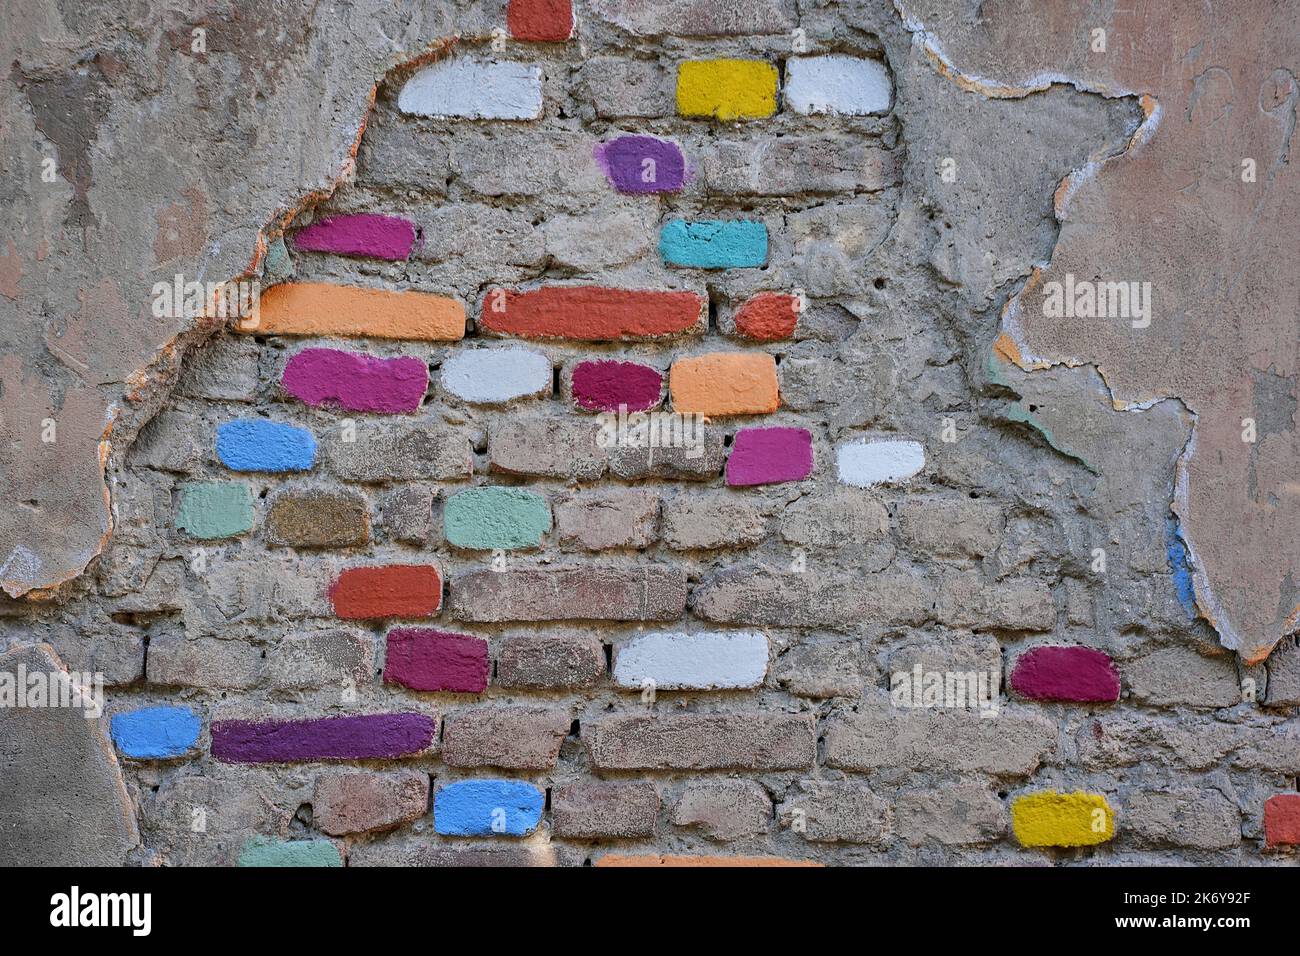 Wand mit beschädigtem Putz und bunt angemalten Ziegelsteinen, mittelalterliches Stadtzentrum Kala, Altstadt, Tiflis, Georgi Banque D'Images